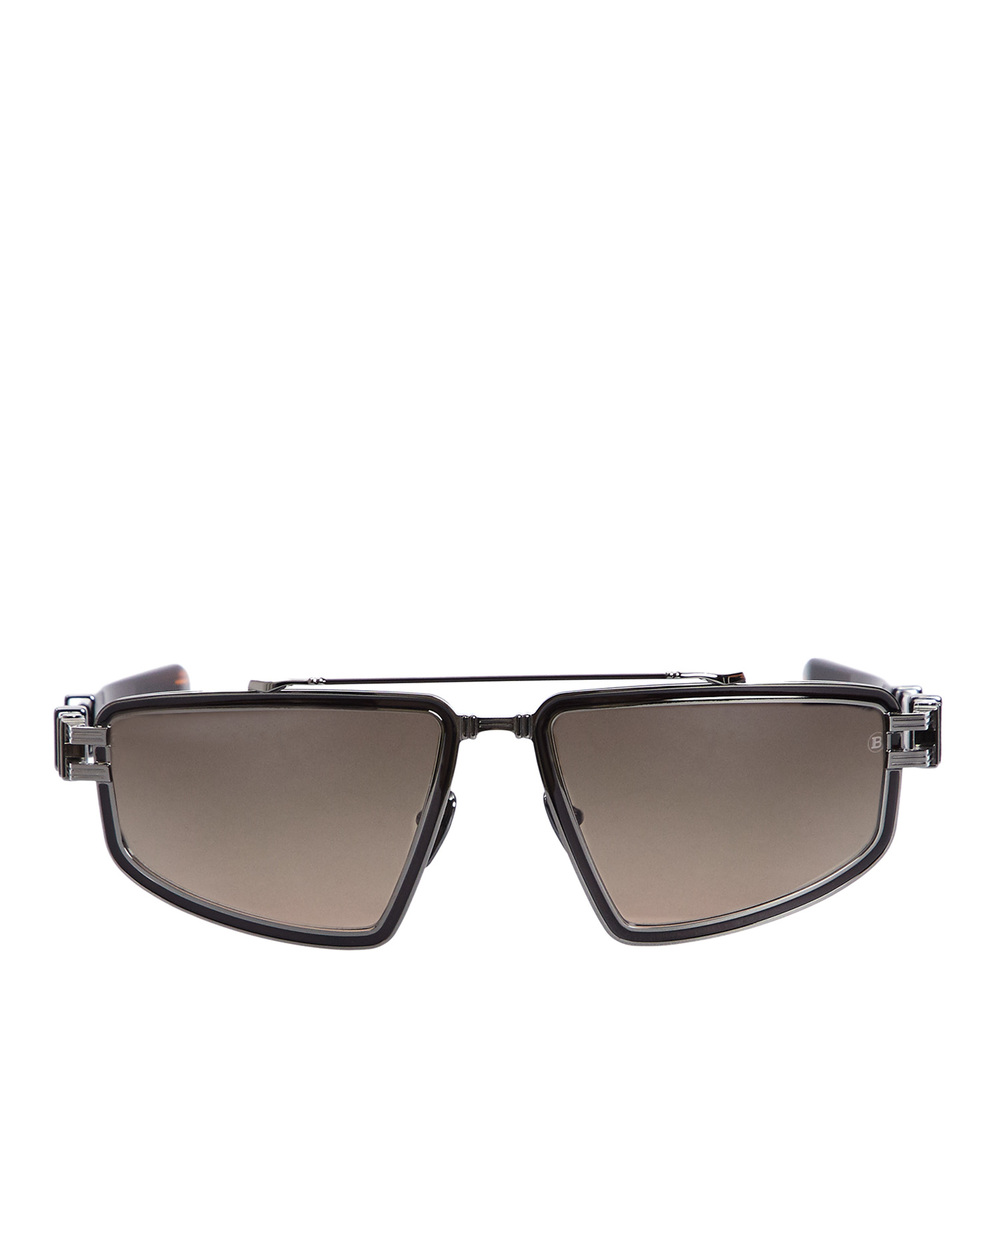 Солнцезащитные очки Titan Balmain BPS-139B-59, серебряный цвет • Купить в интернет-магазине Kameron